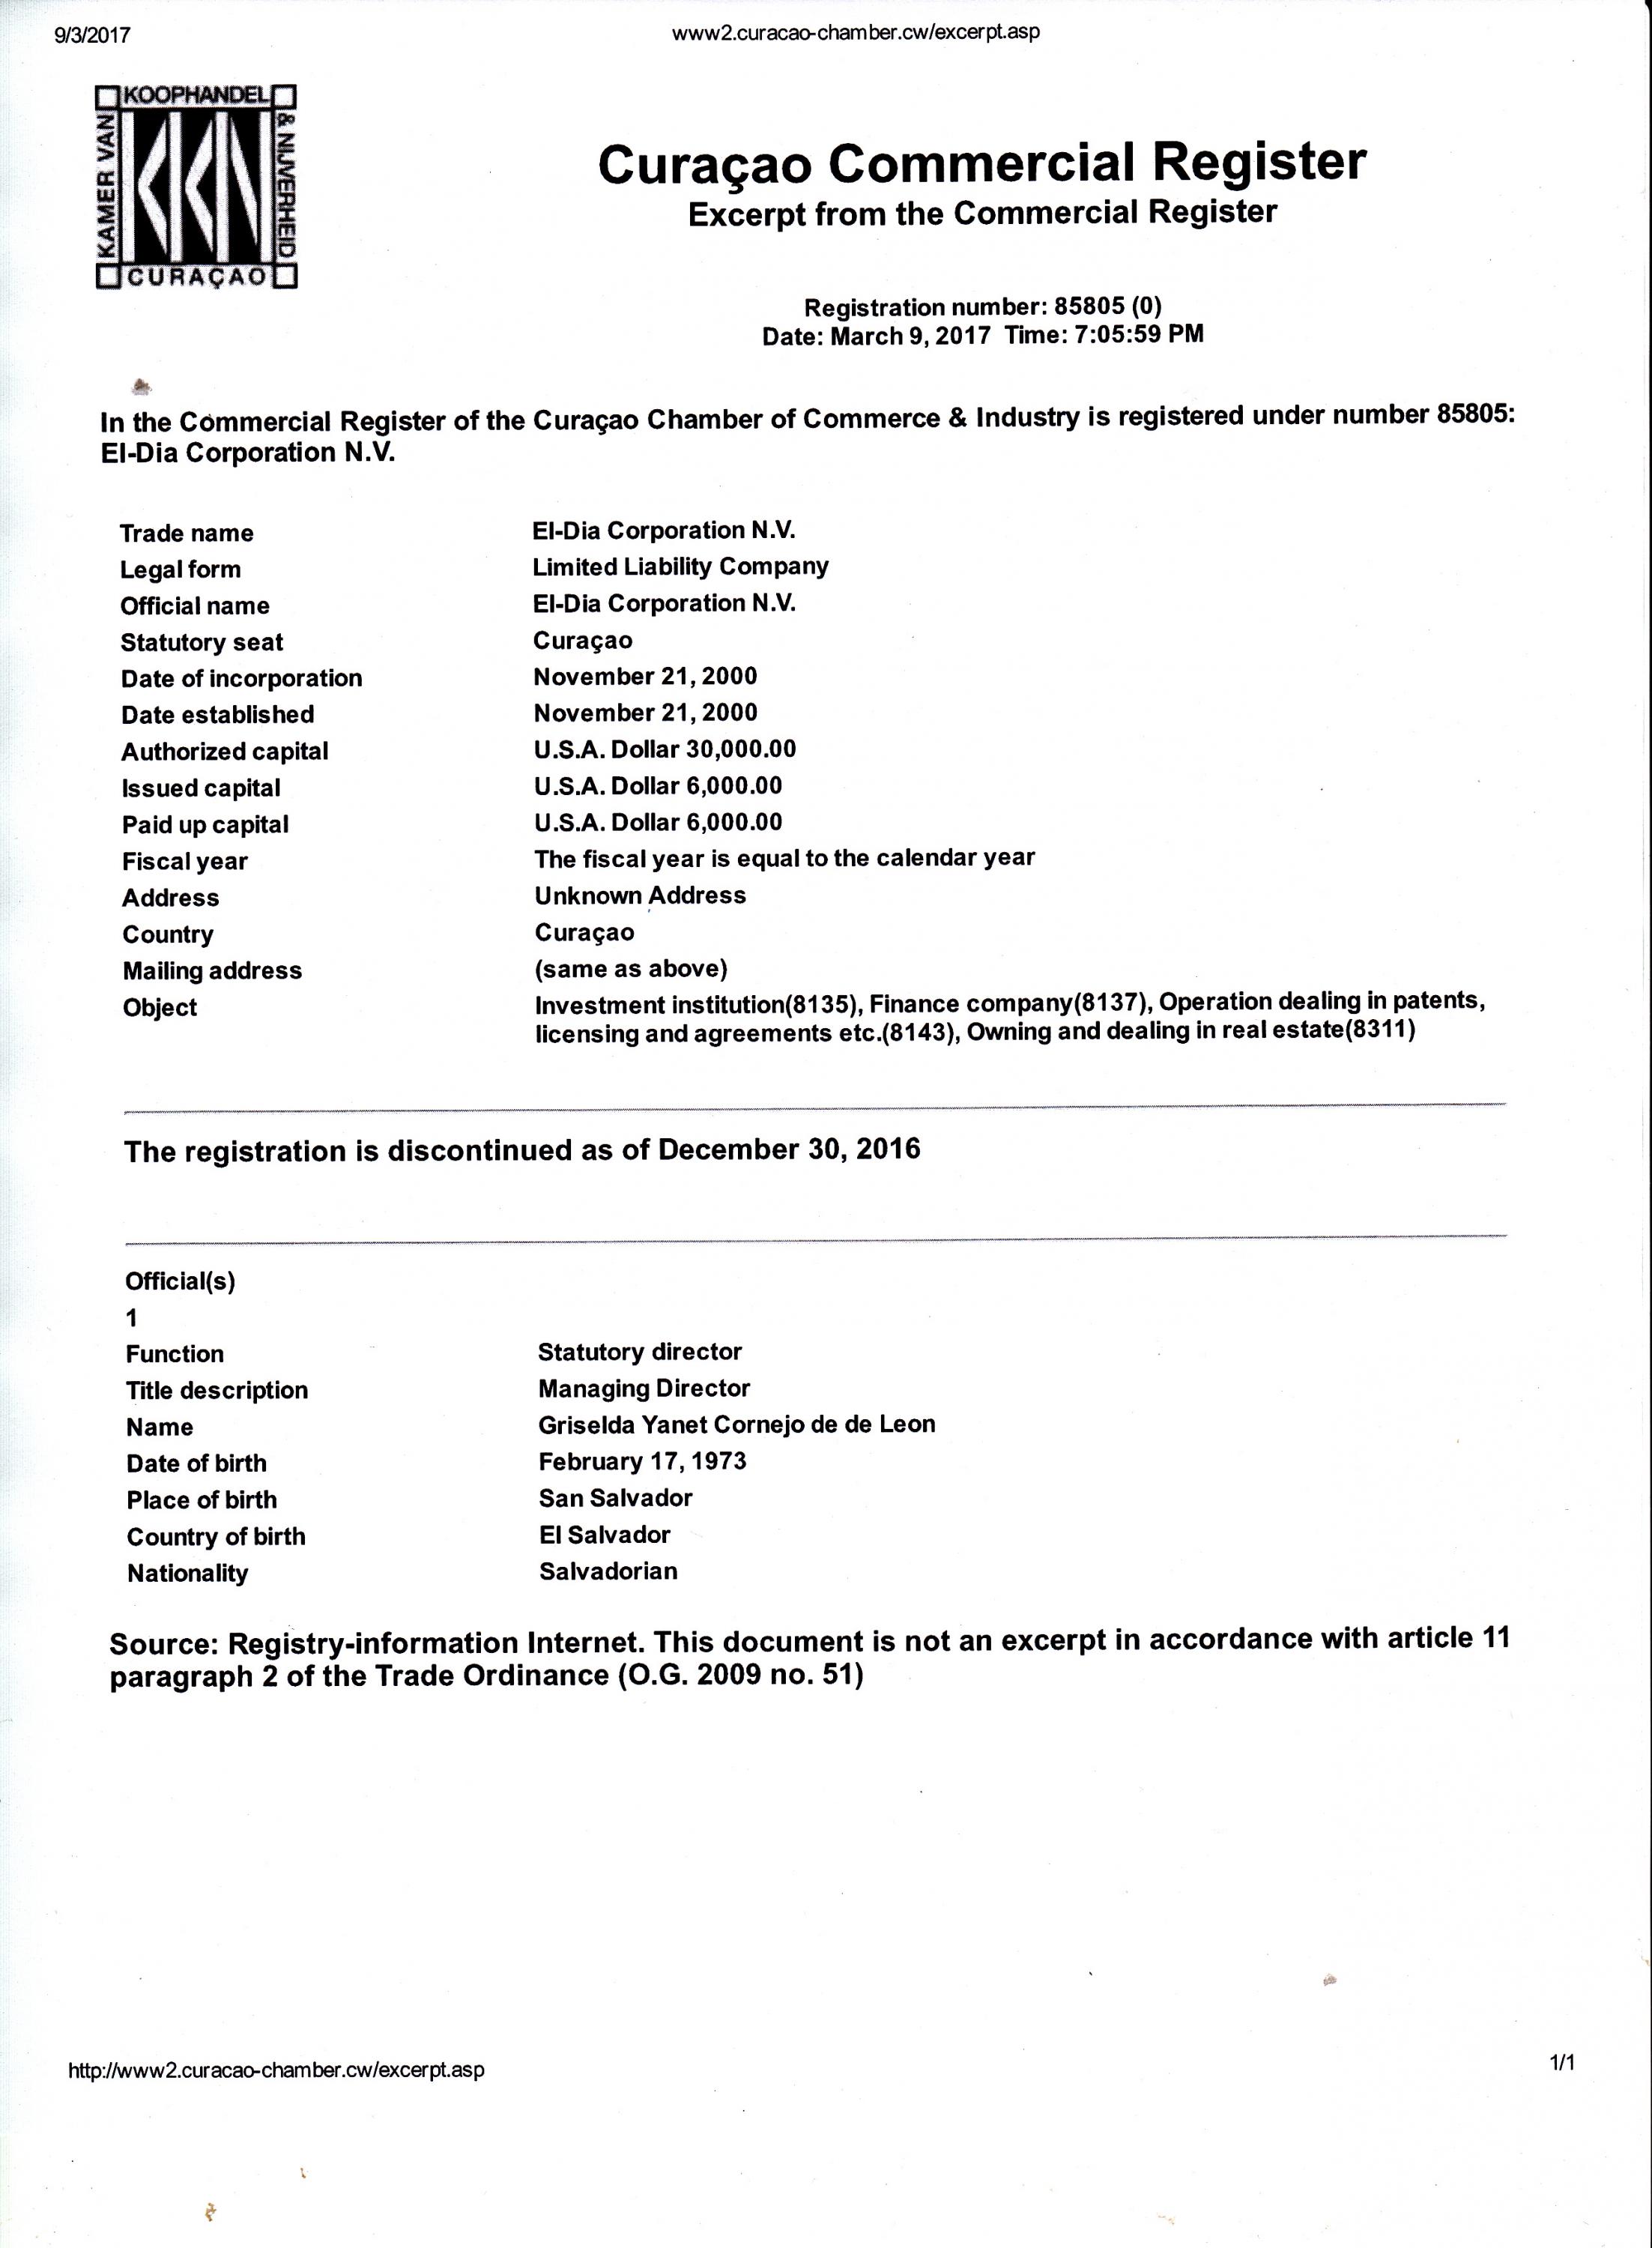 Documento del Registro Comercial de Curazao que confirma que la salvadoreña Griselda Yanet Cornejo de de León dirige la compañía El-Dia Corporation.